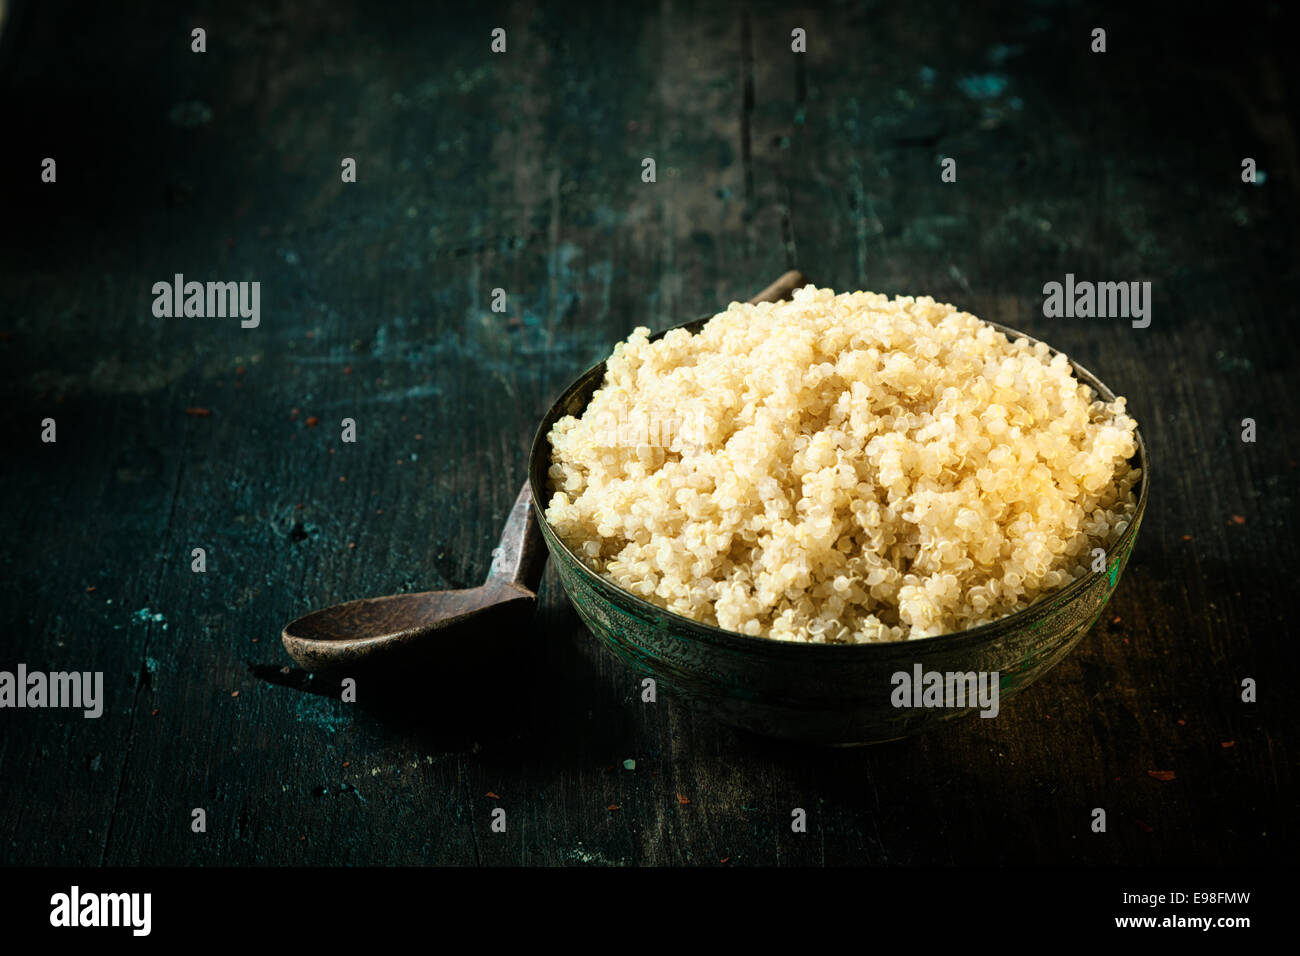 Ciotola di steamed quinoa sani, una pseudo-cereale ricco di proteine salutato come superfood per le sue qualità nutrizionali, su sfondo scuro con copyspace Foto Stock